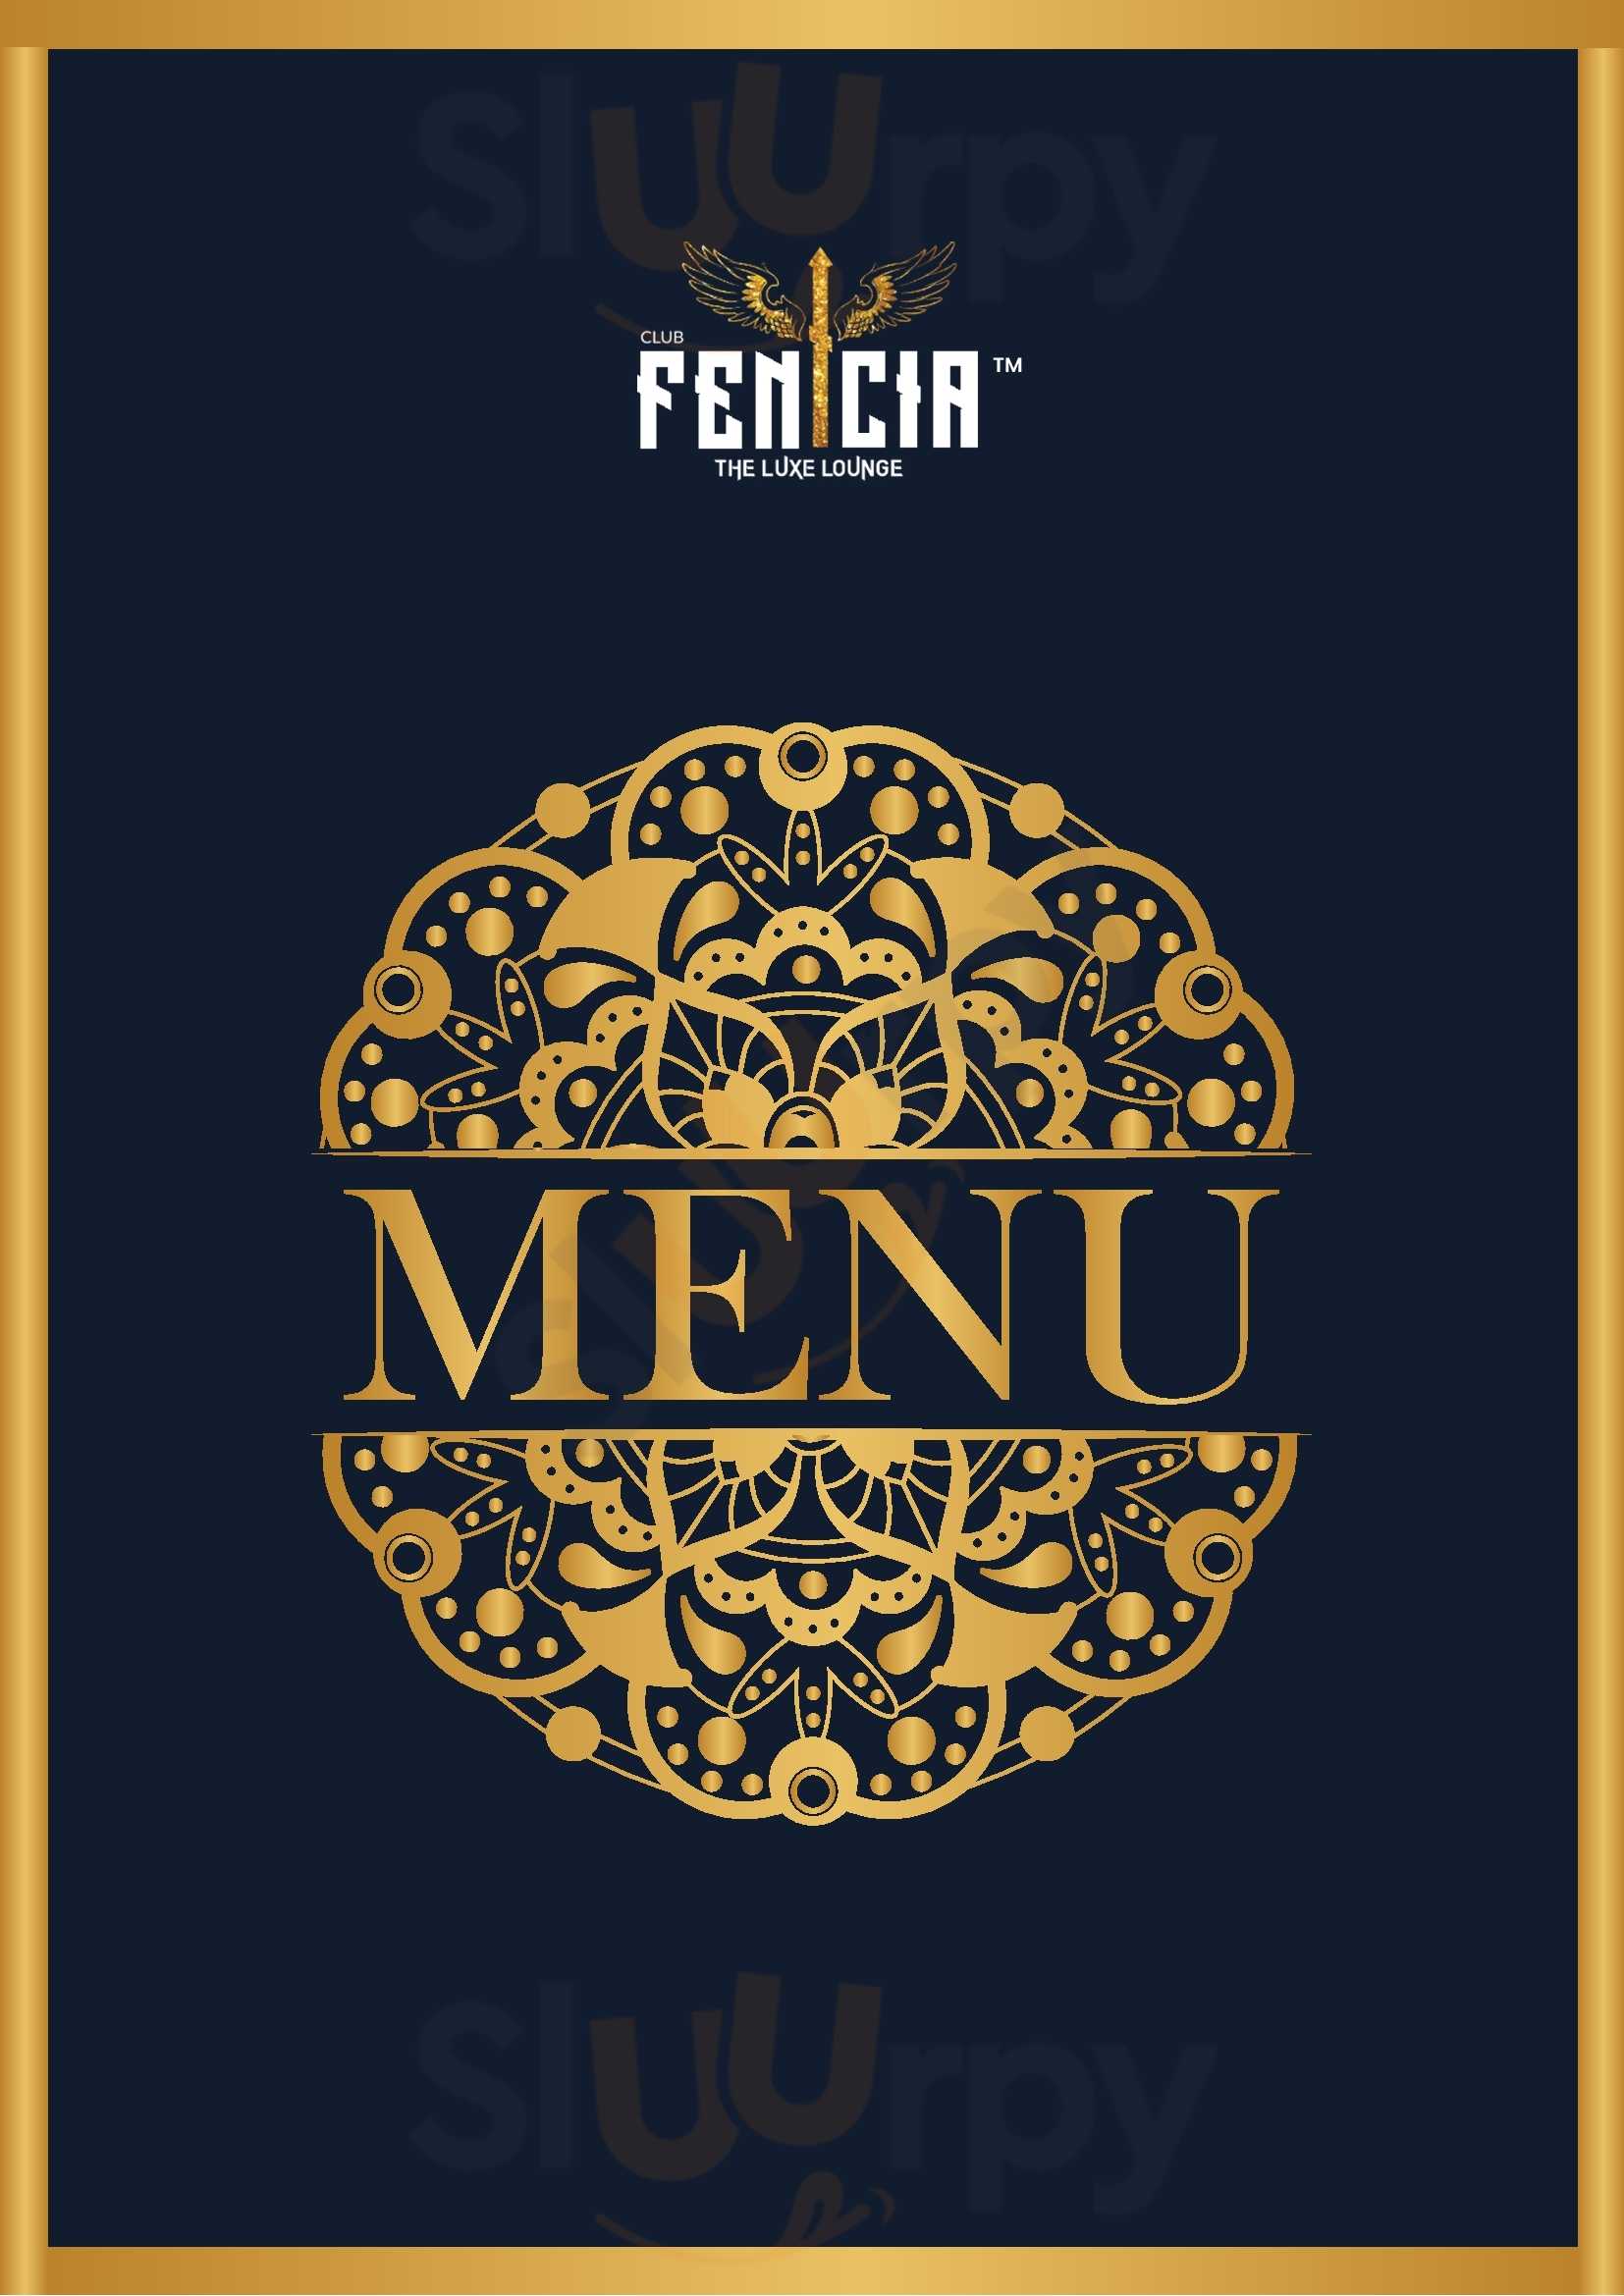 Fenicia Lounge Goa Madgaon Menu - 1